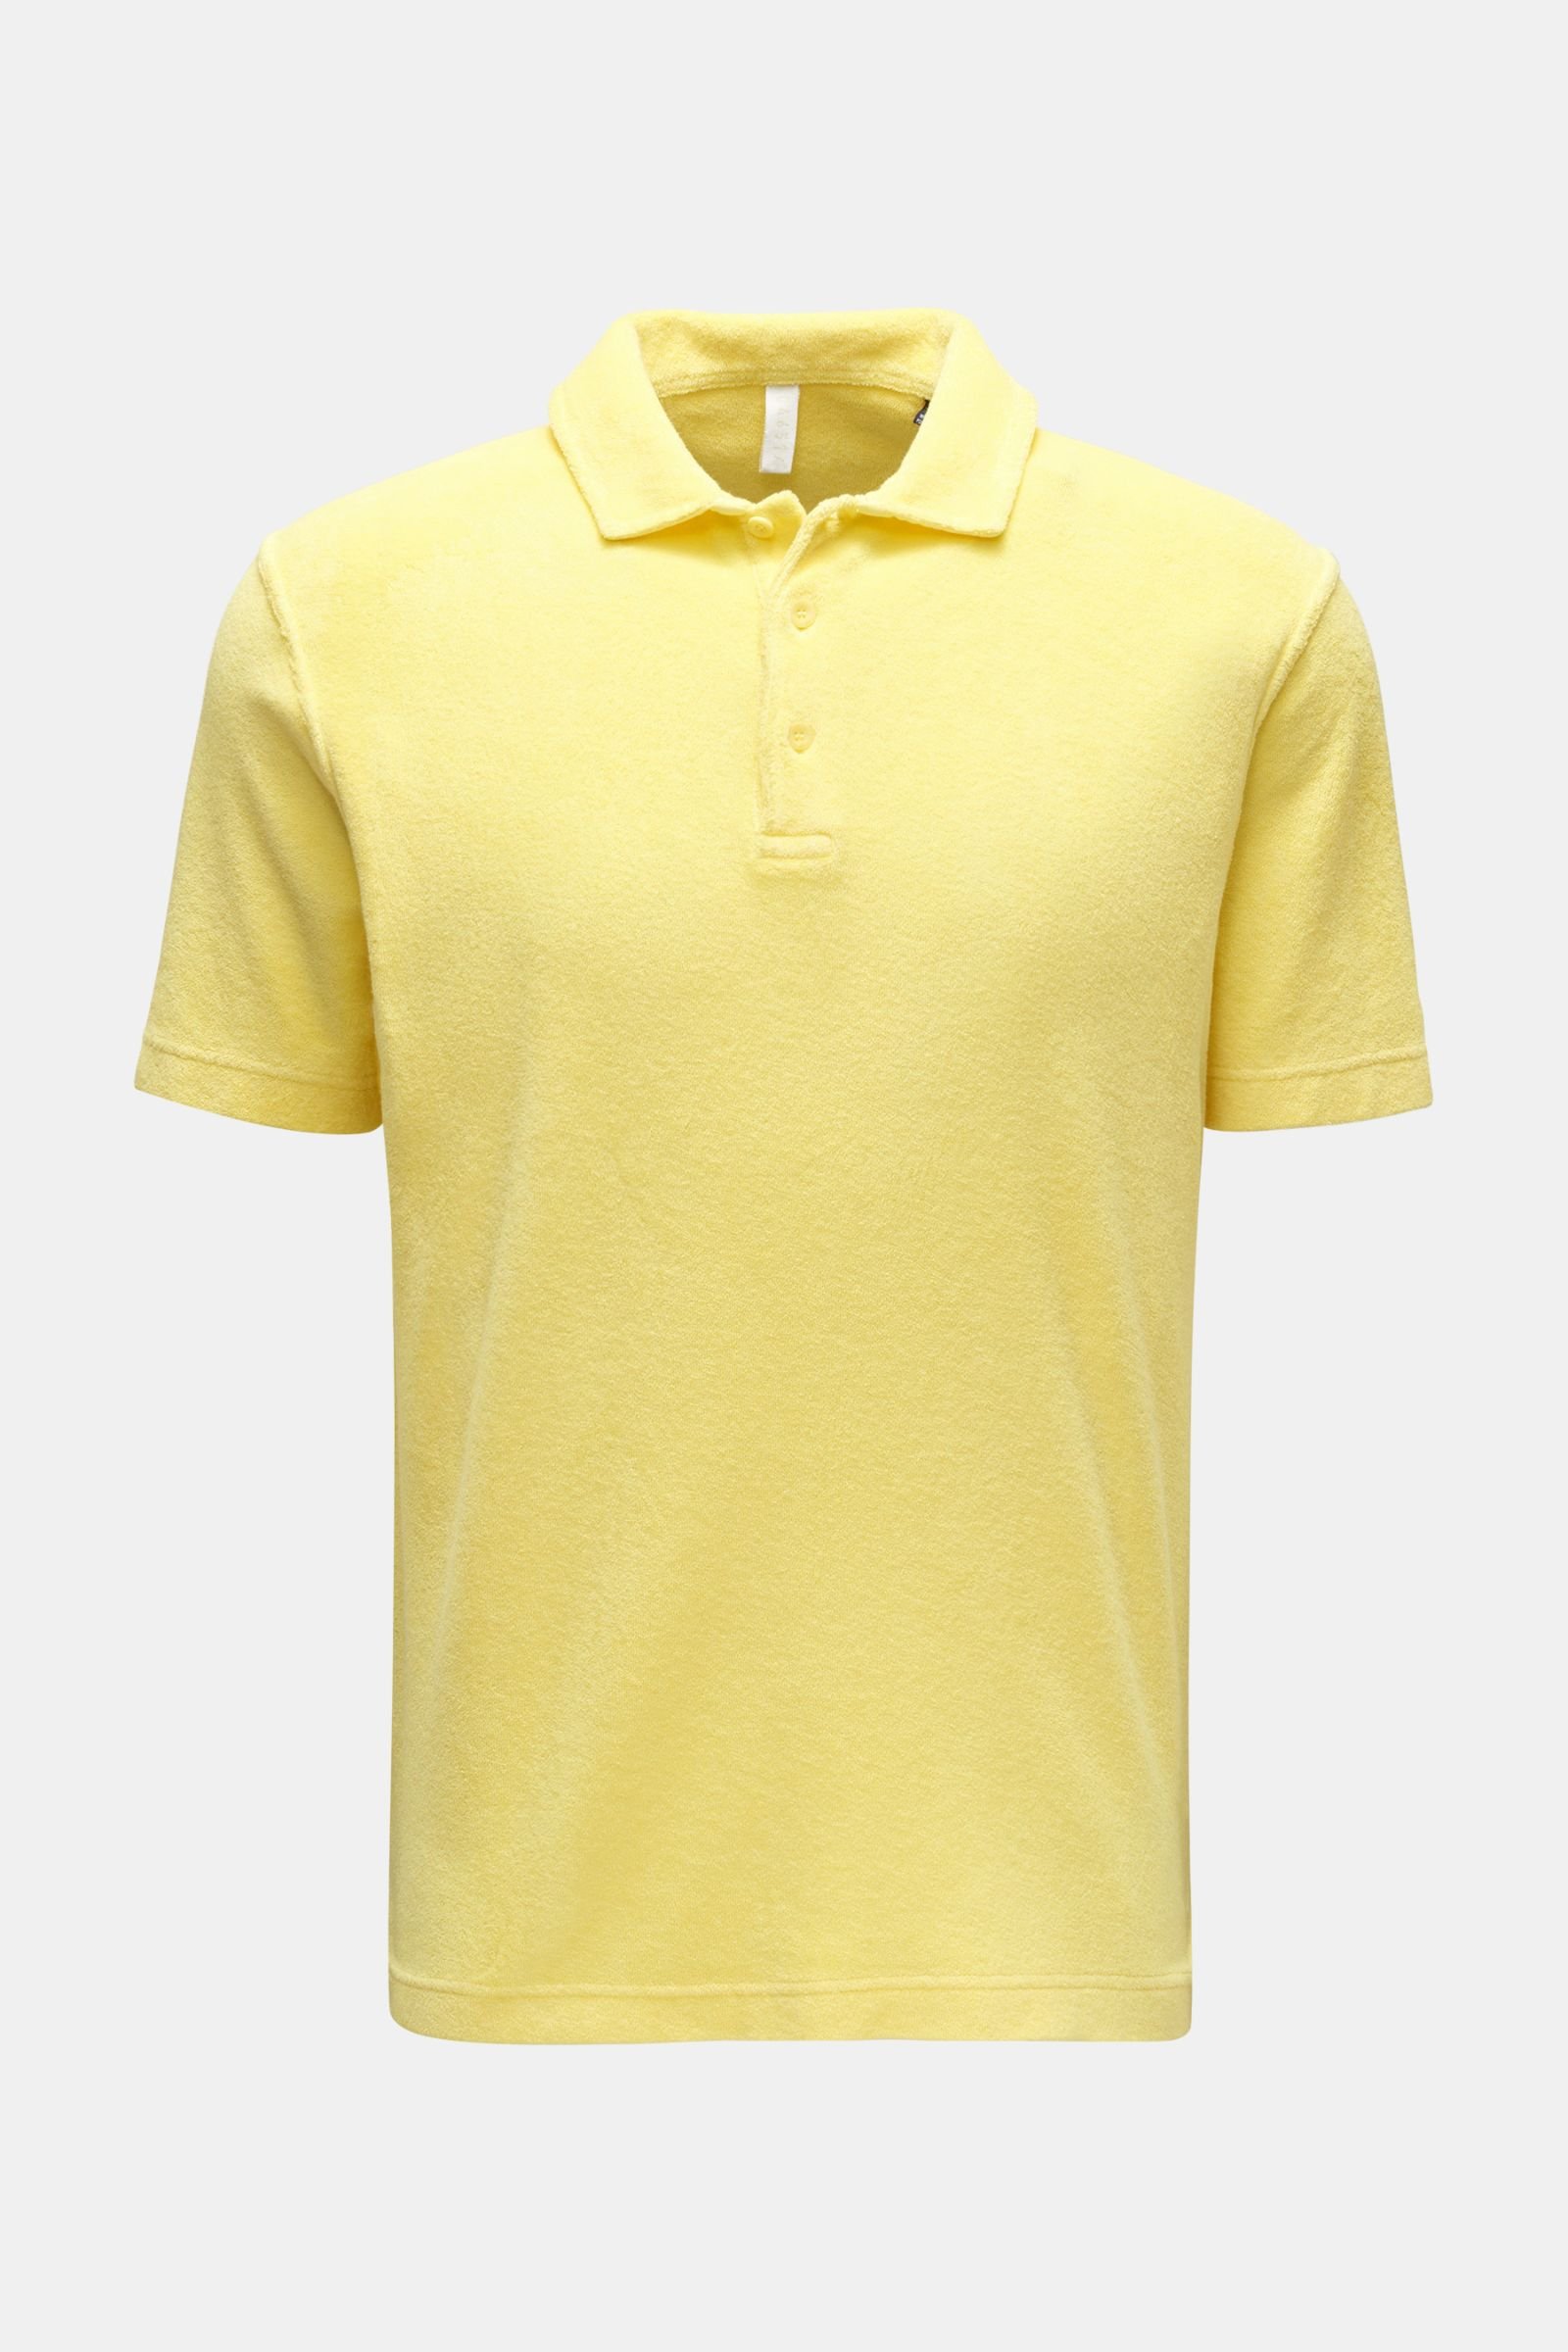 Terry polo shirt 'Terry Polo' yellow